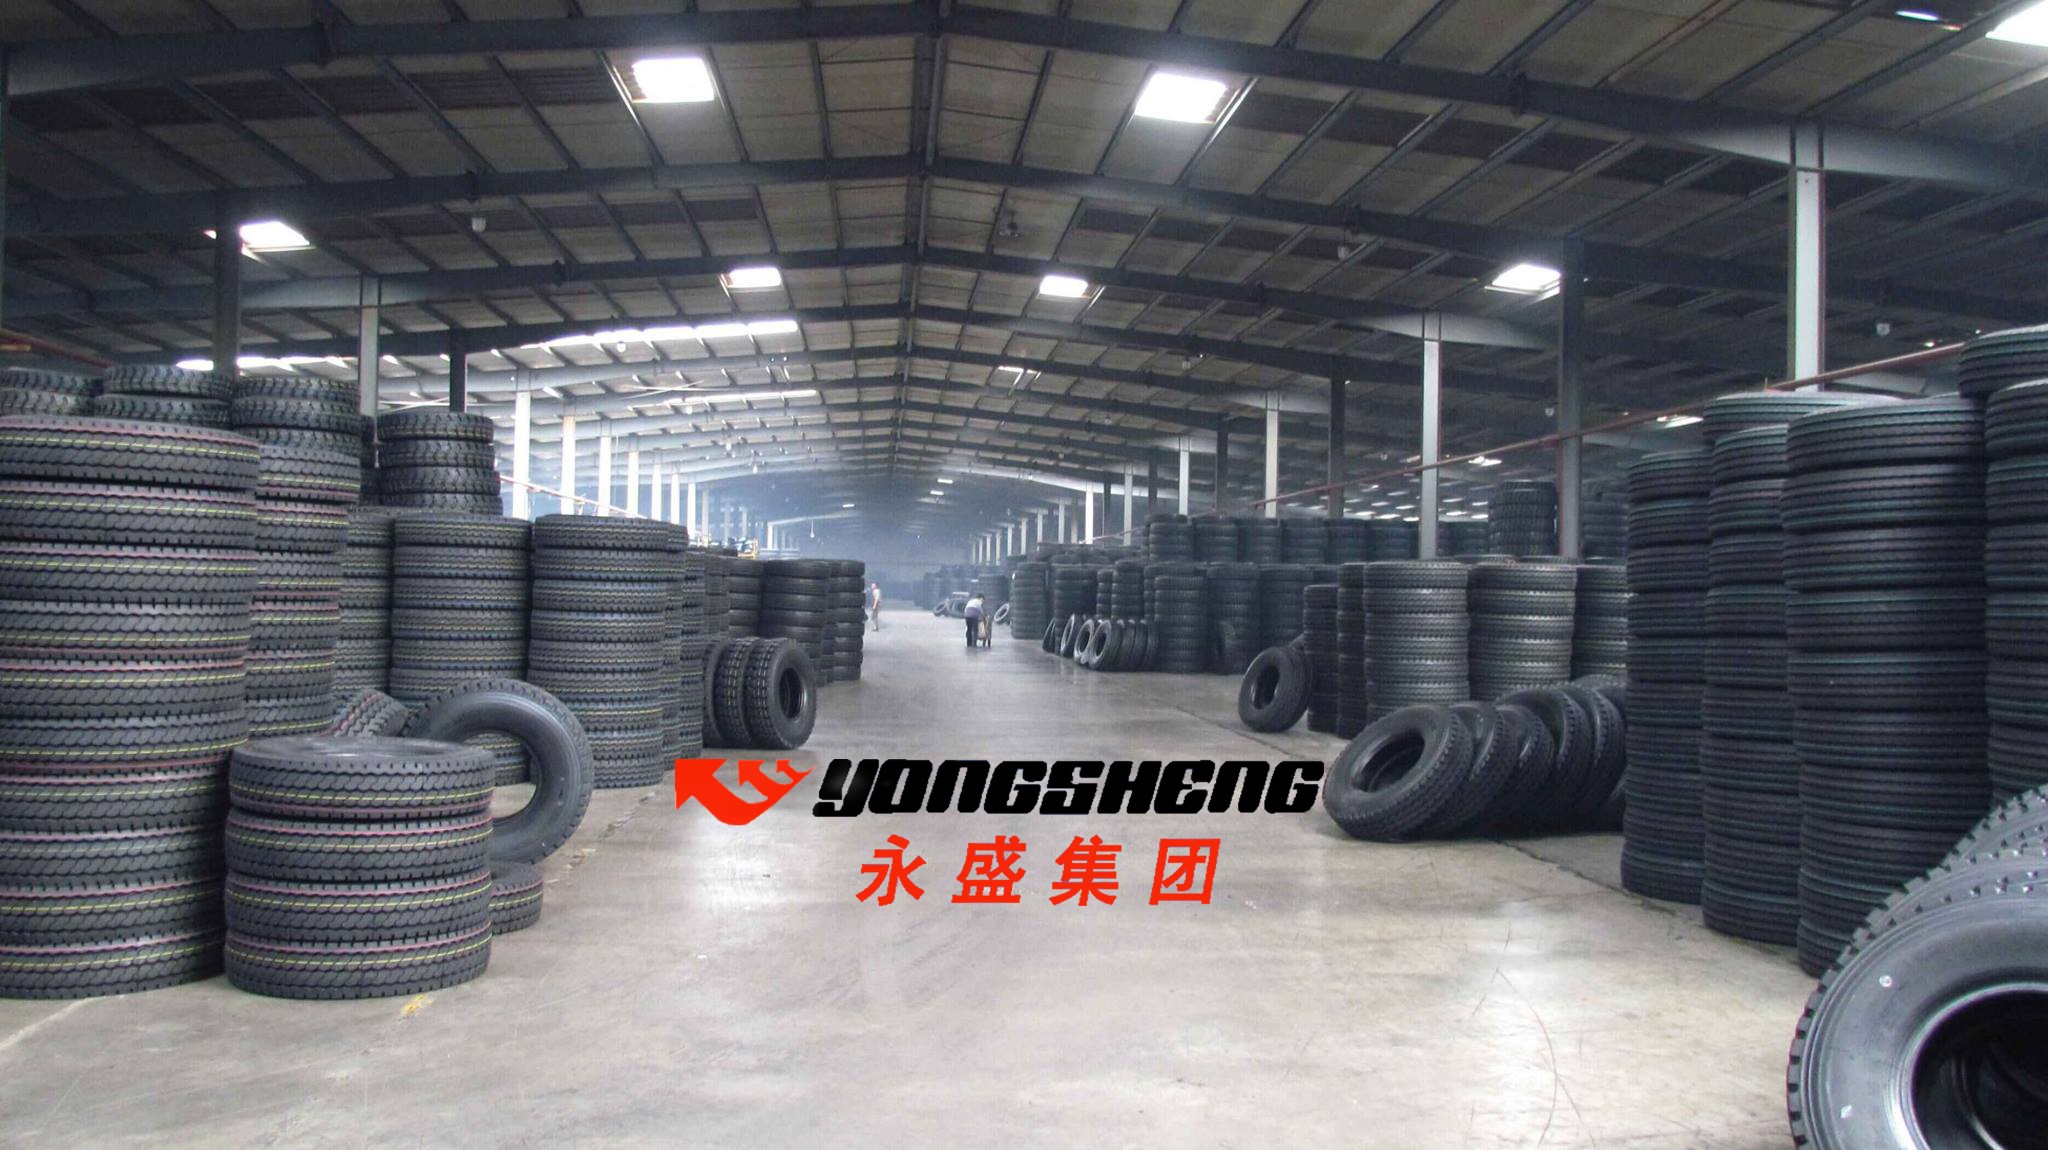 Entrepot de Shandong Yongsheng Rubber Group Co Ltd